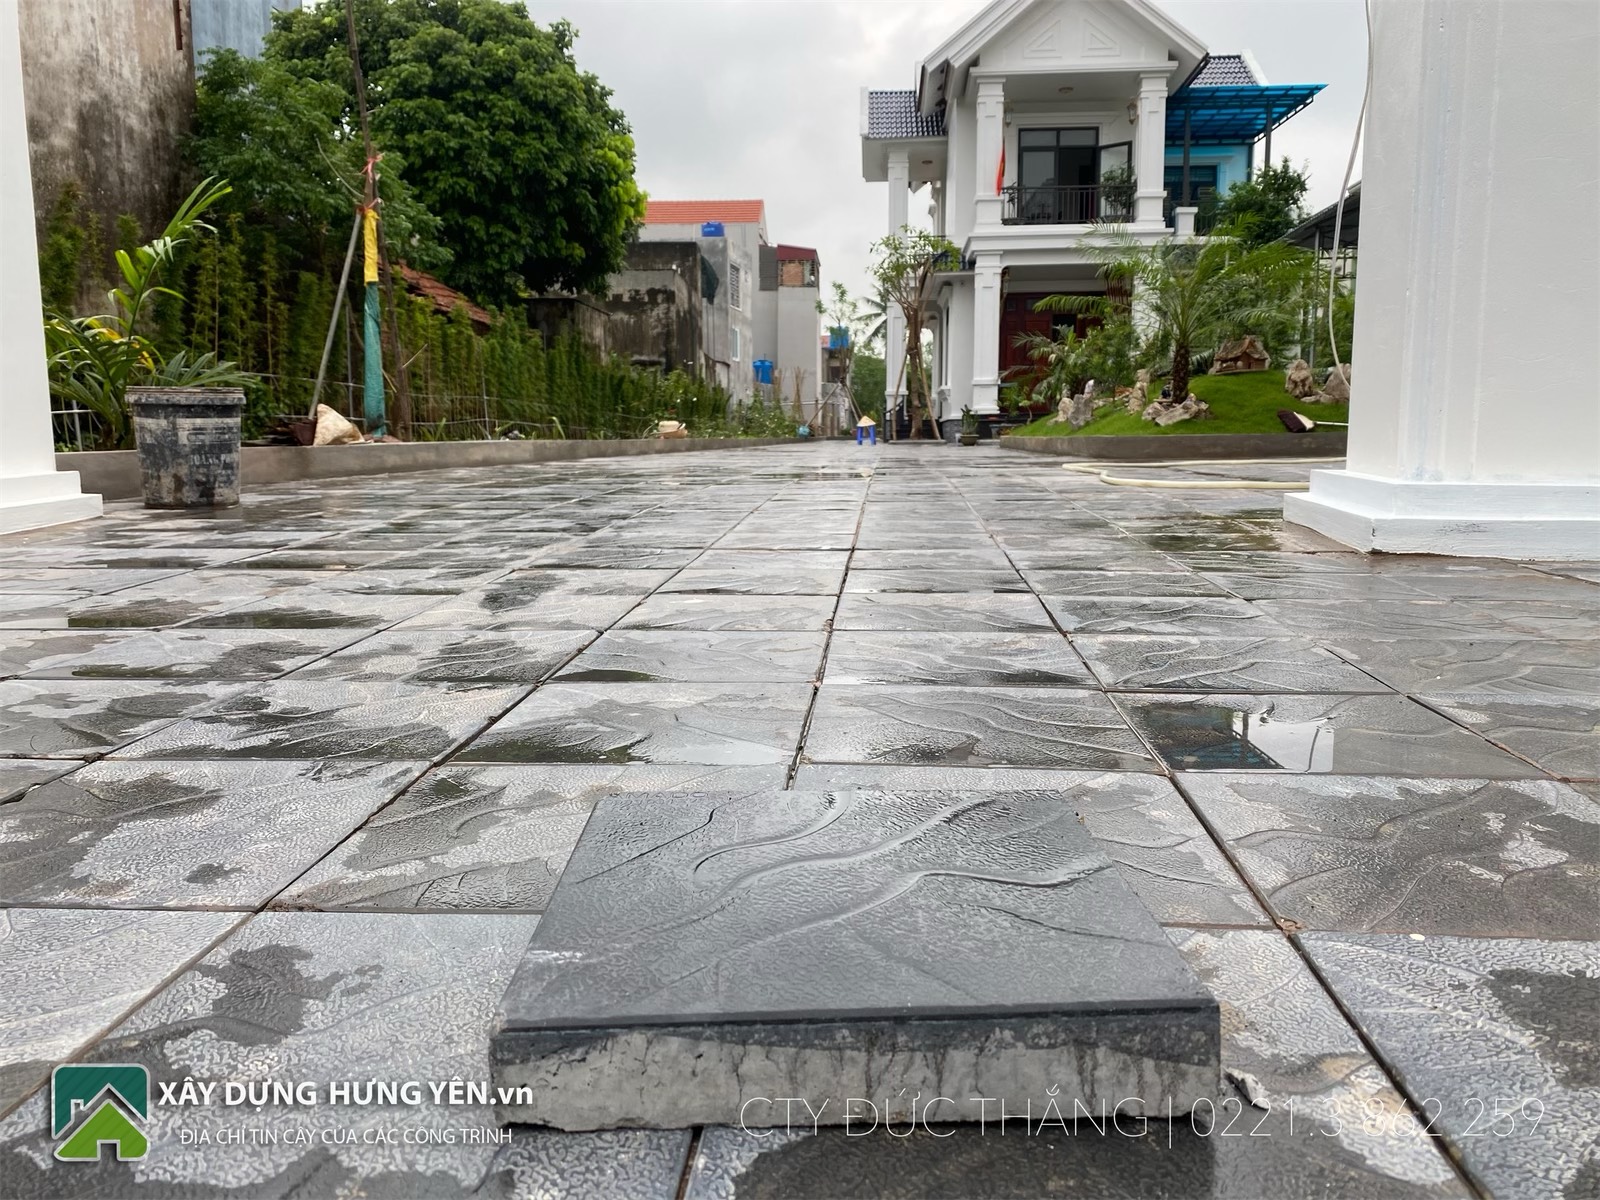 Biệt thự 2 tầng tại thành phố Hưng Yên sử dụng gạch lát sân vườn giả đá coric 300x300x50